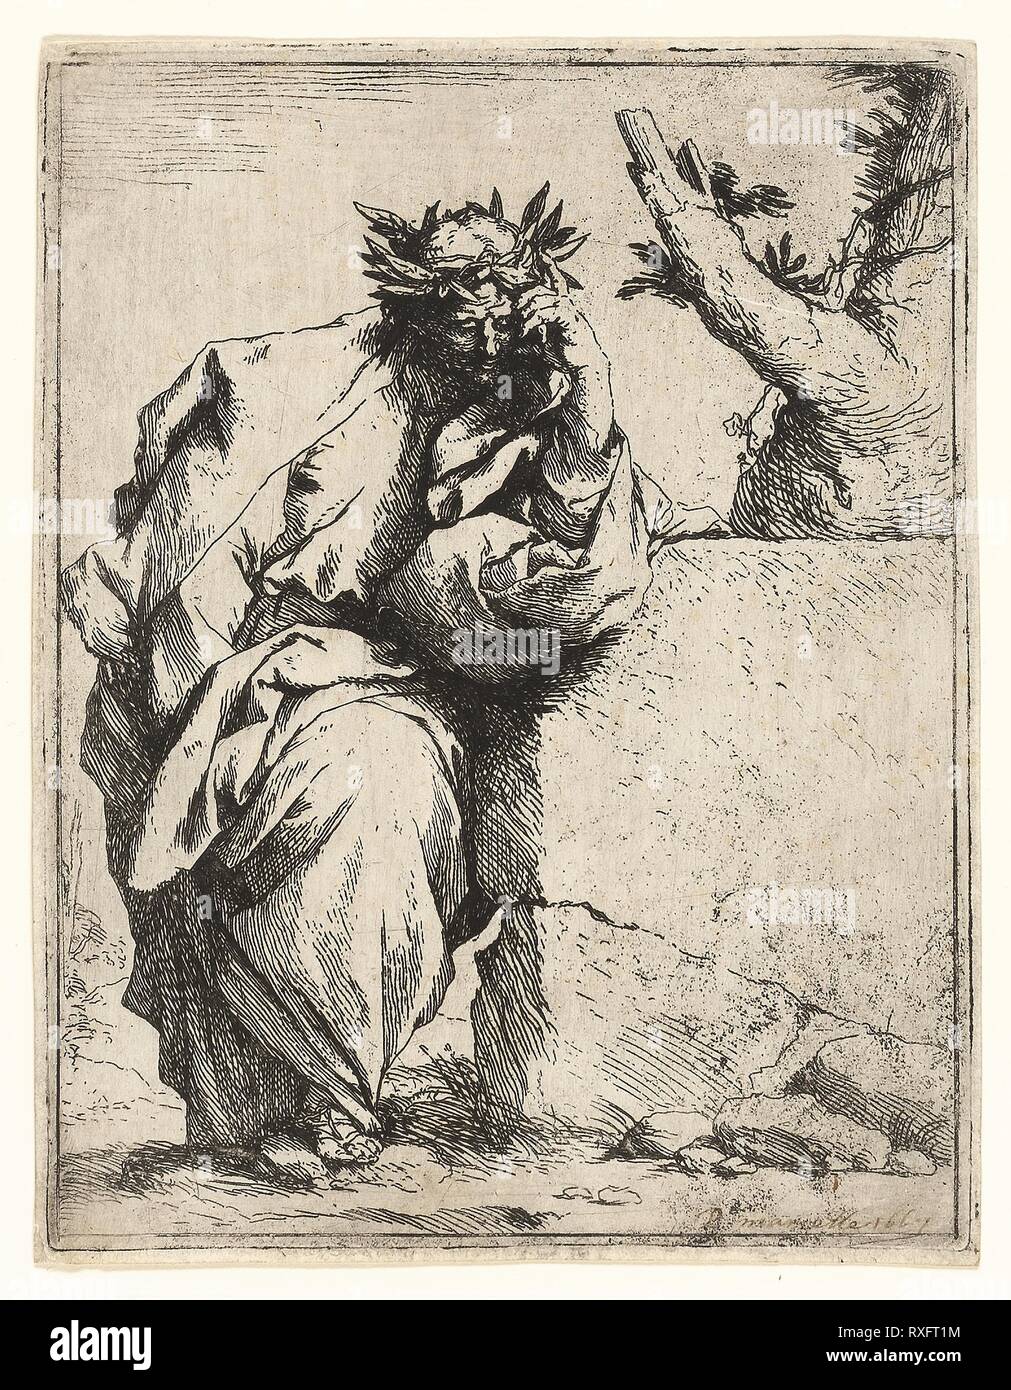 Il poeta. Jusepe de Ribera; Spagnolo, 1588-1652. Data: 1619-1630. Dimensioni: . Acquaforte su carta. Origine: Spagna. Museo: Chicago Art Institute. Foto Stock